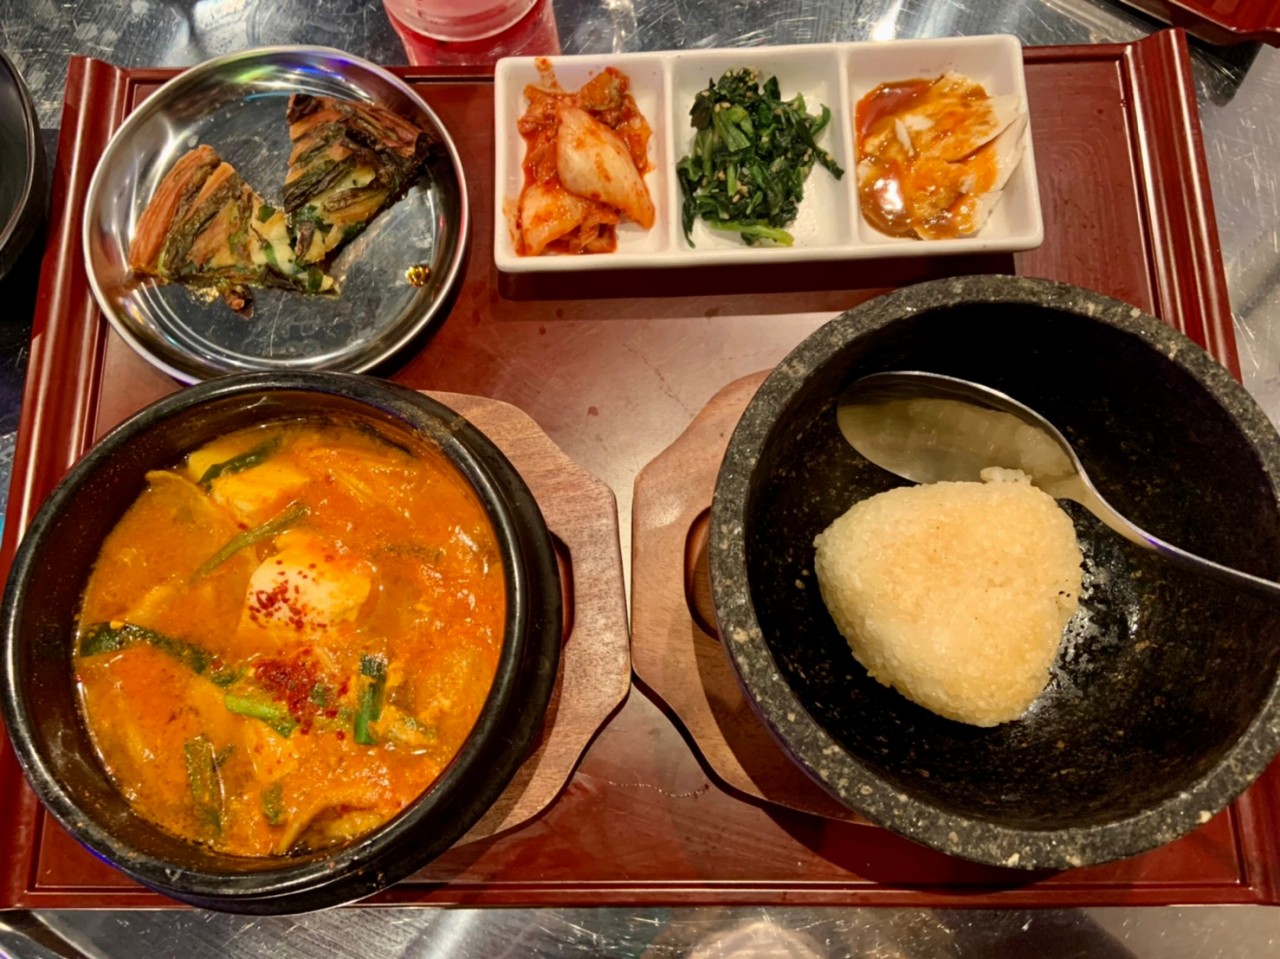 4月8日オープンまるで韓国ドラマの中！「韓国食堂 ジョンマッテン」 で超コスパランチを楽しむ